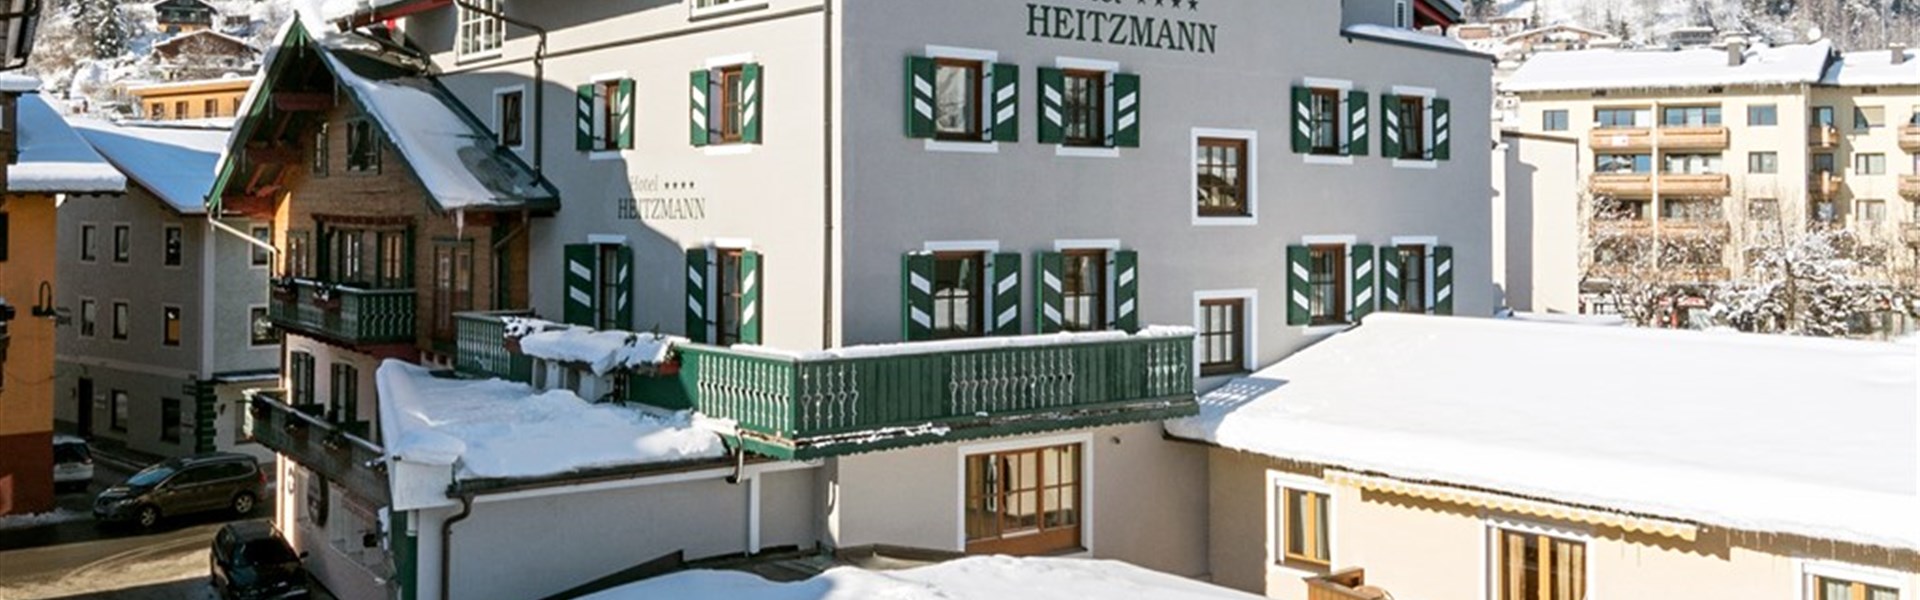 Hotel Heitzmann (W) - 